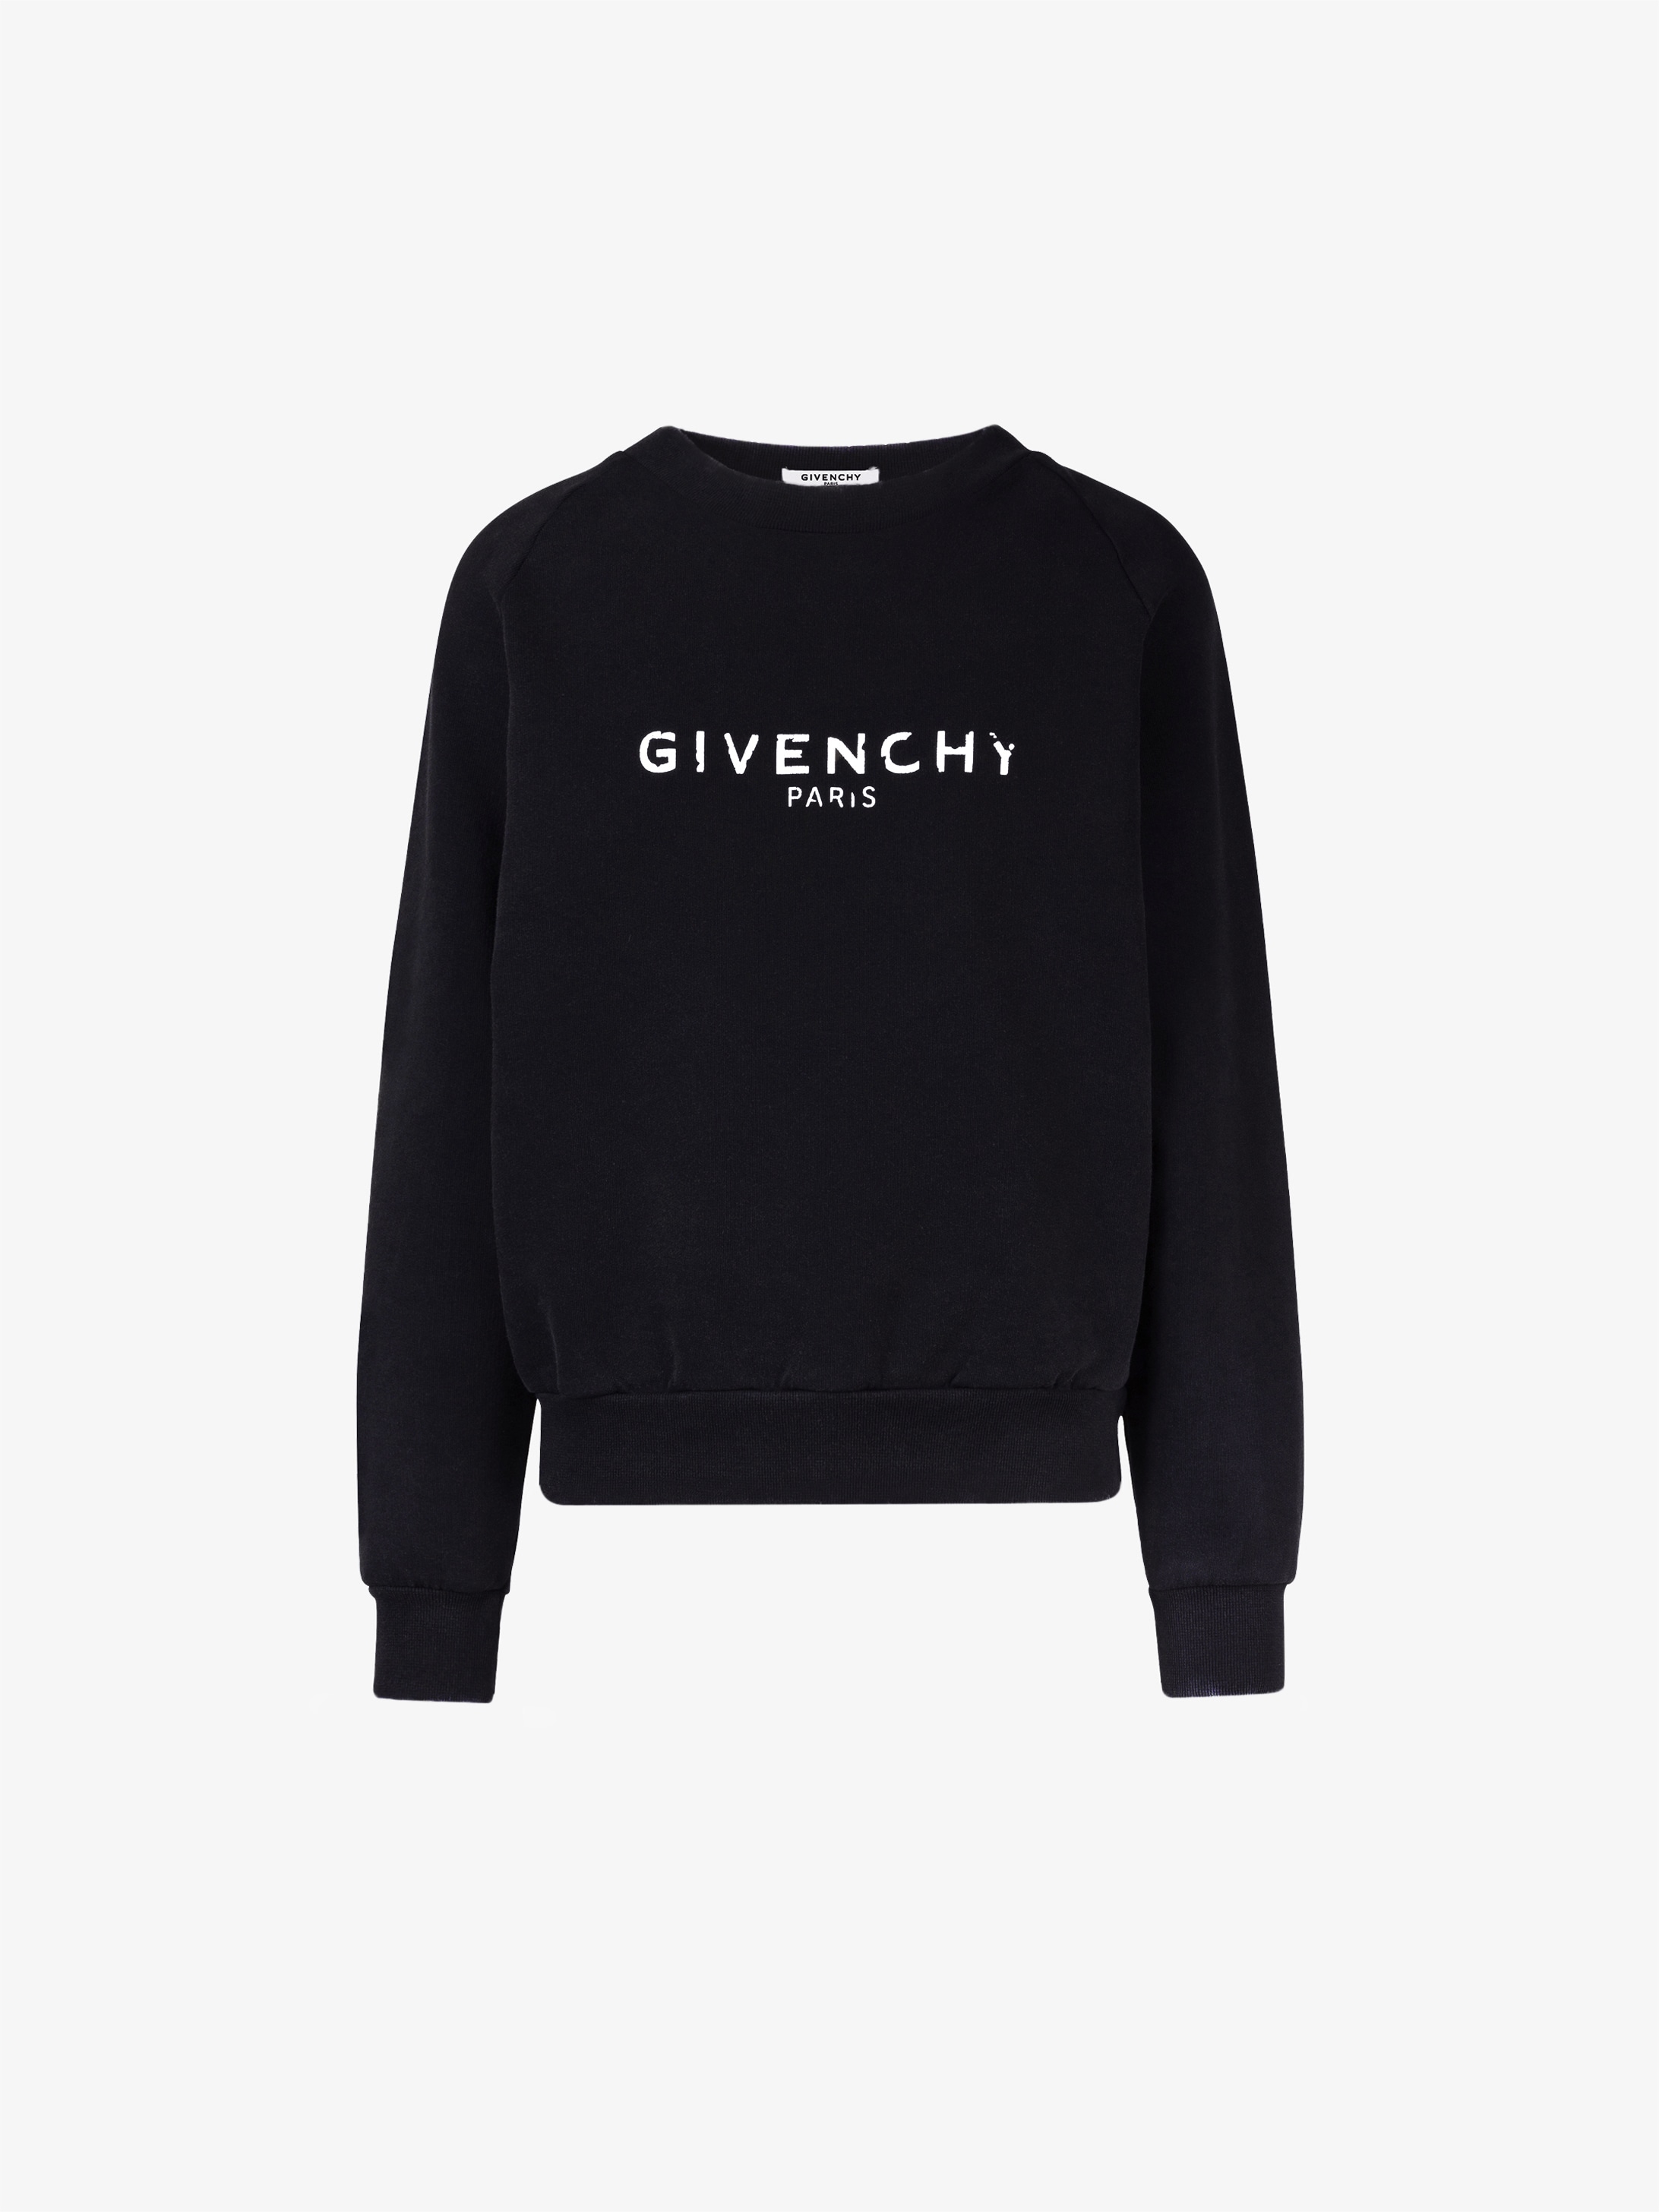 Printed sweatshirt | GIVENCHY Paris